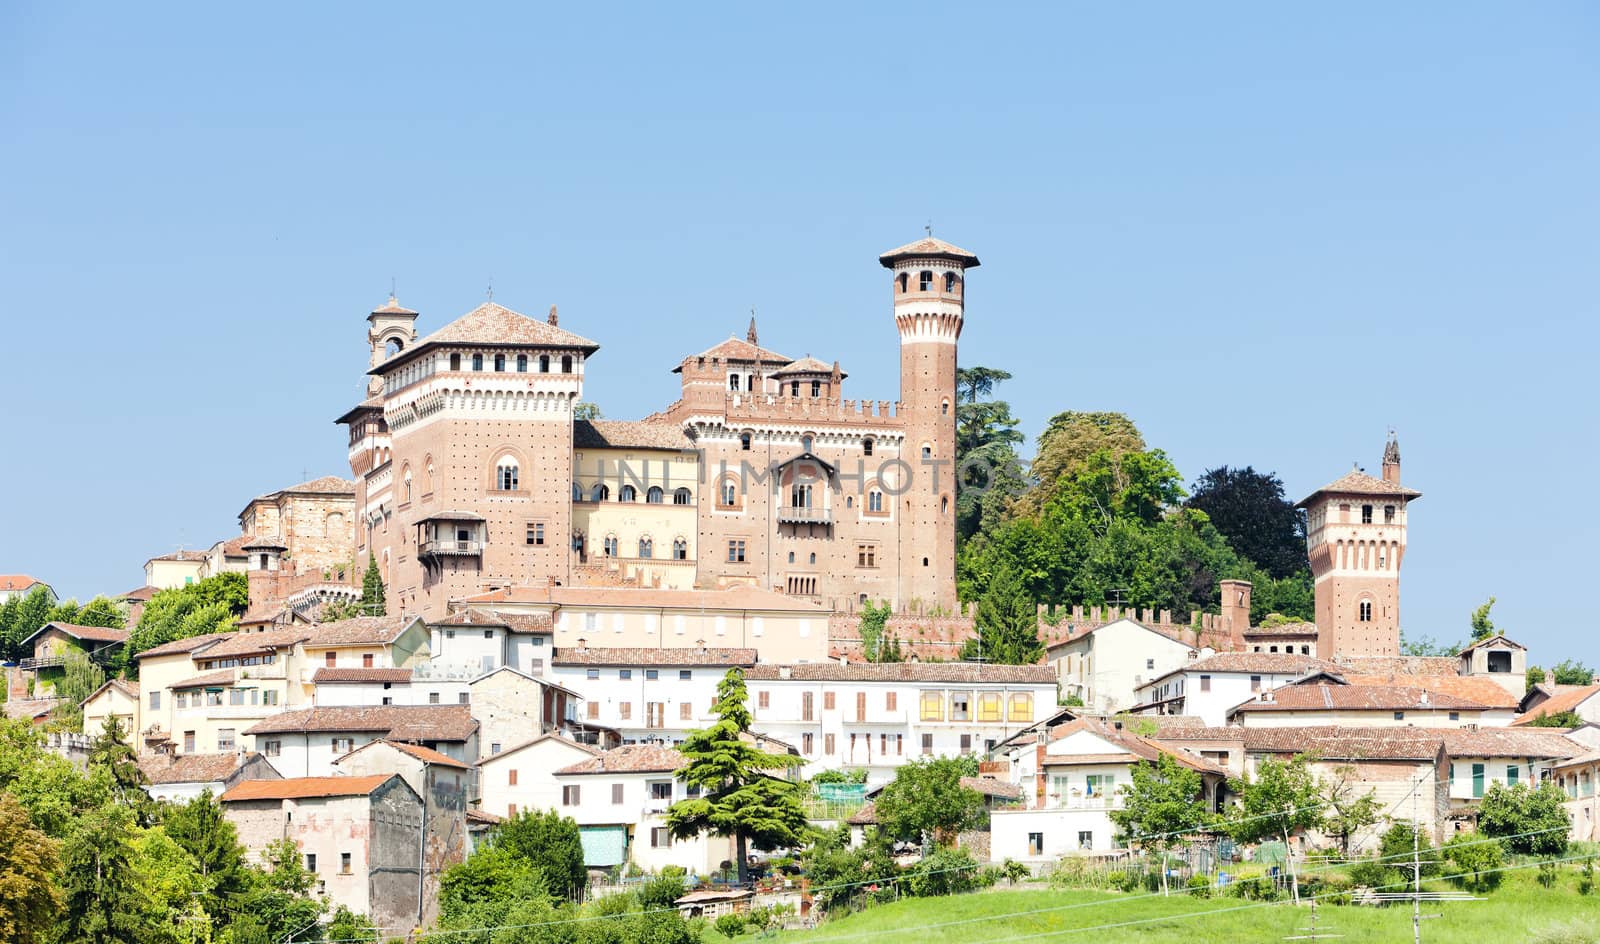 Cereseto, Piedmont, Italy by phbcz